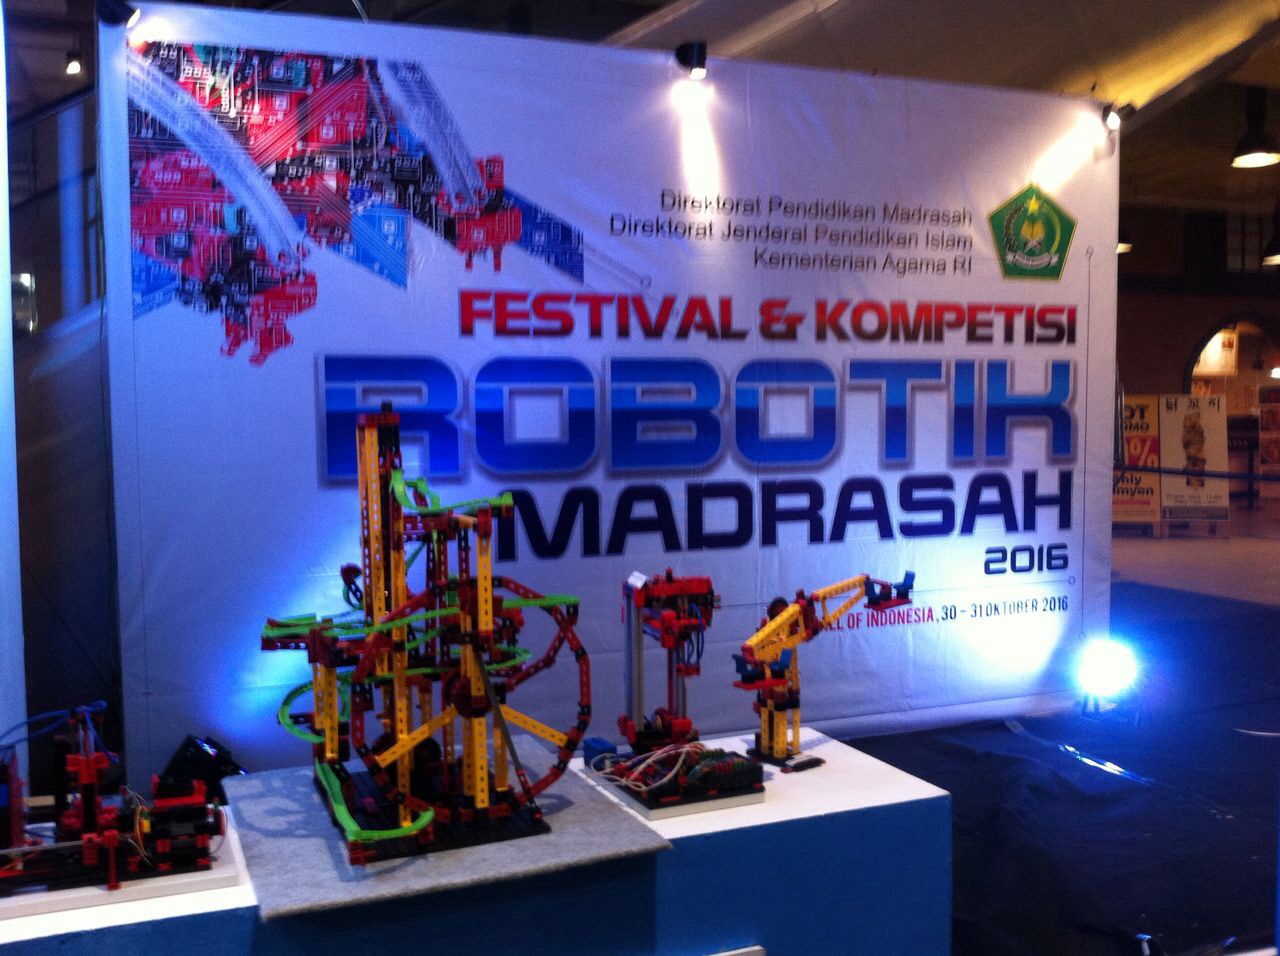 Festival dan Kompetisi Robotik Madrasah 2016 Resmi Dibuka